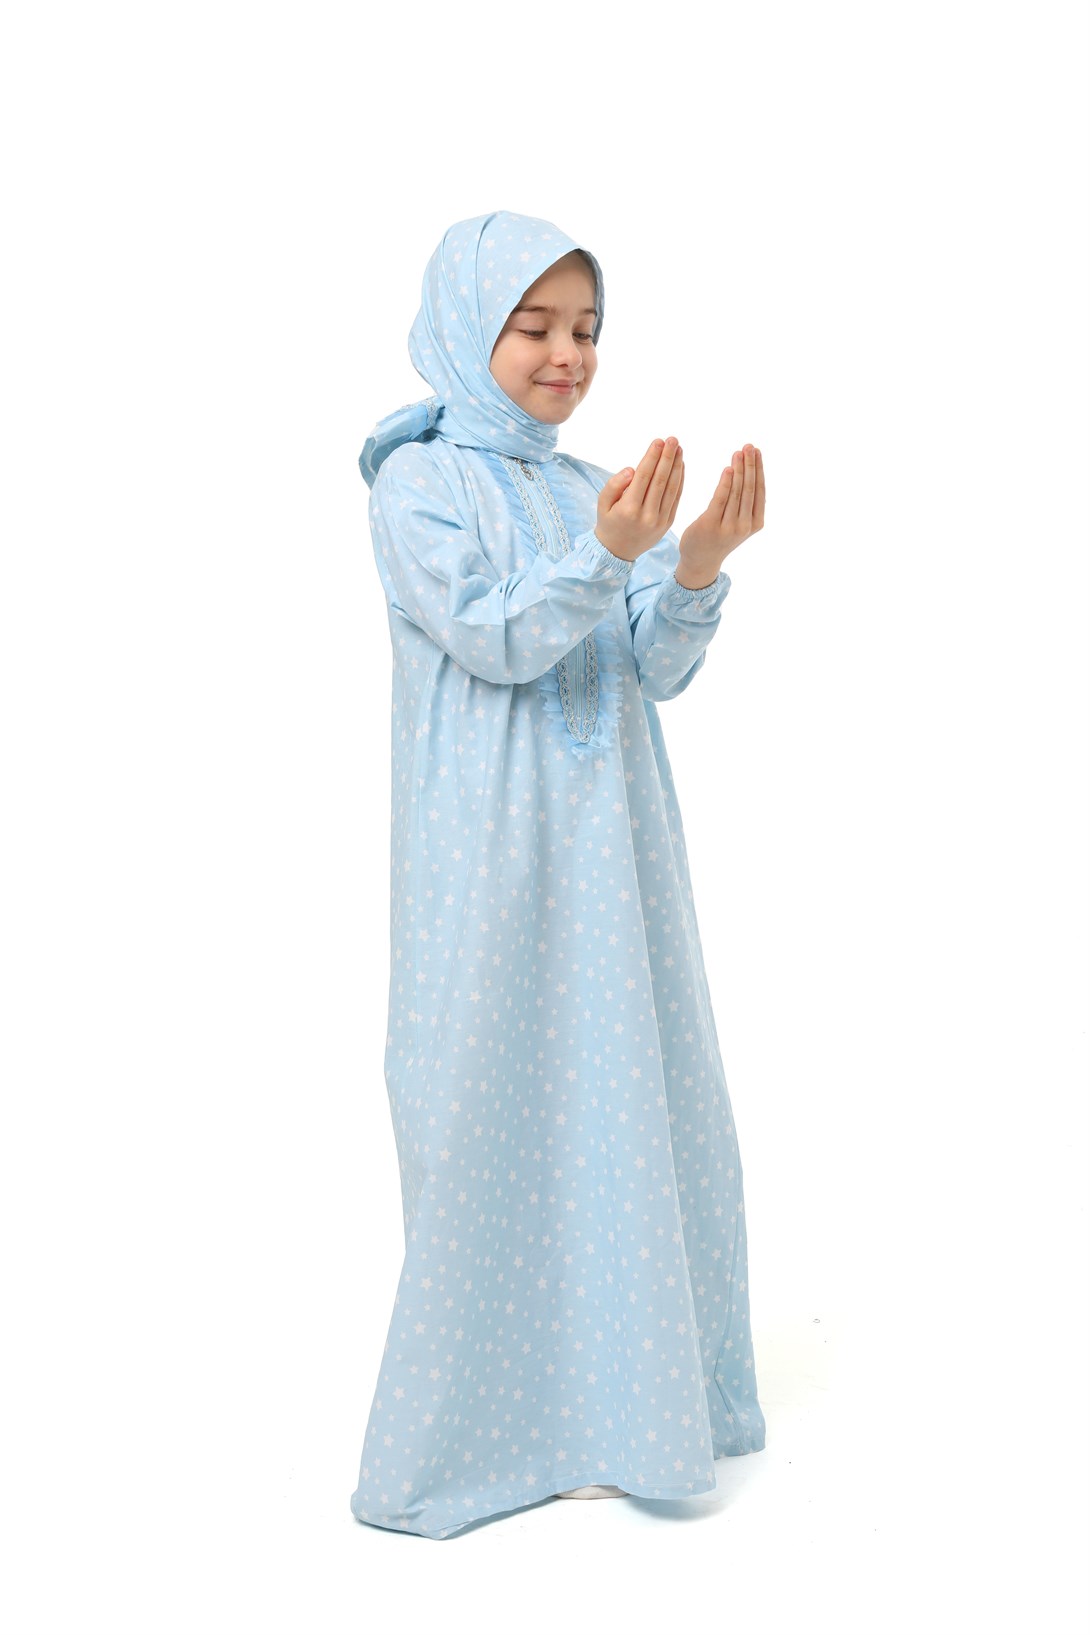 Practical Zippered Cotton Girls' Prayer Dress Blue Printed